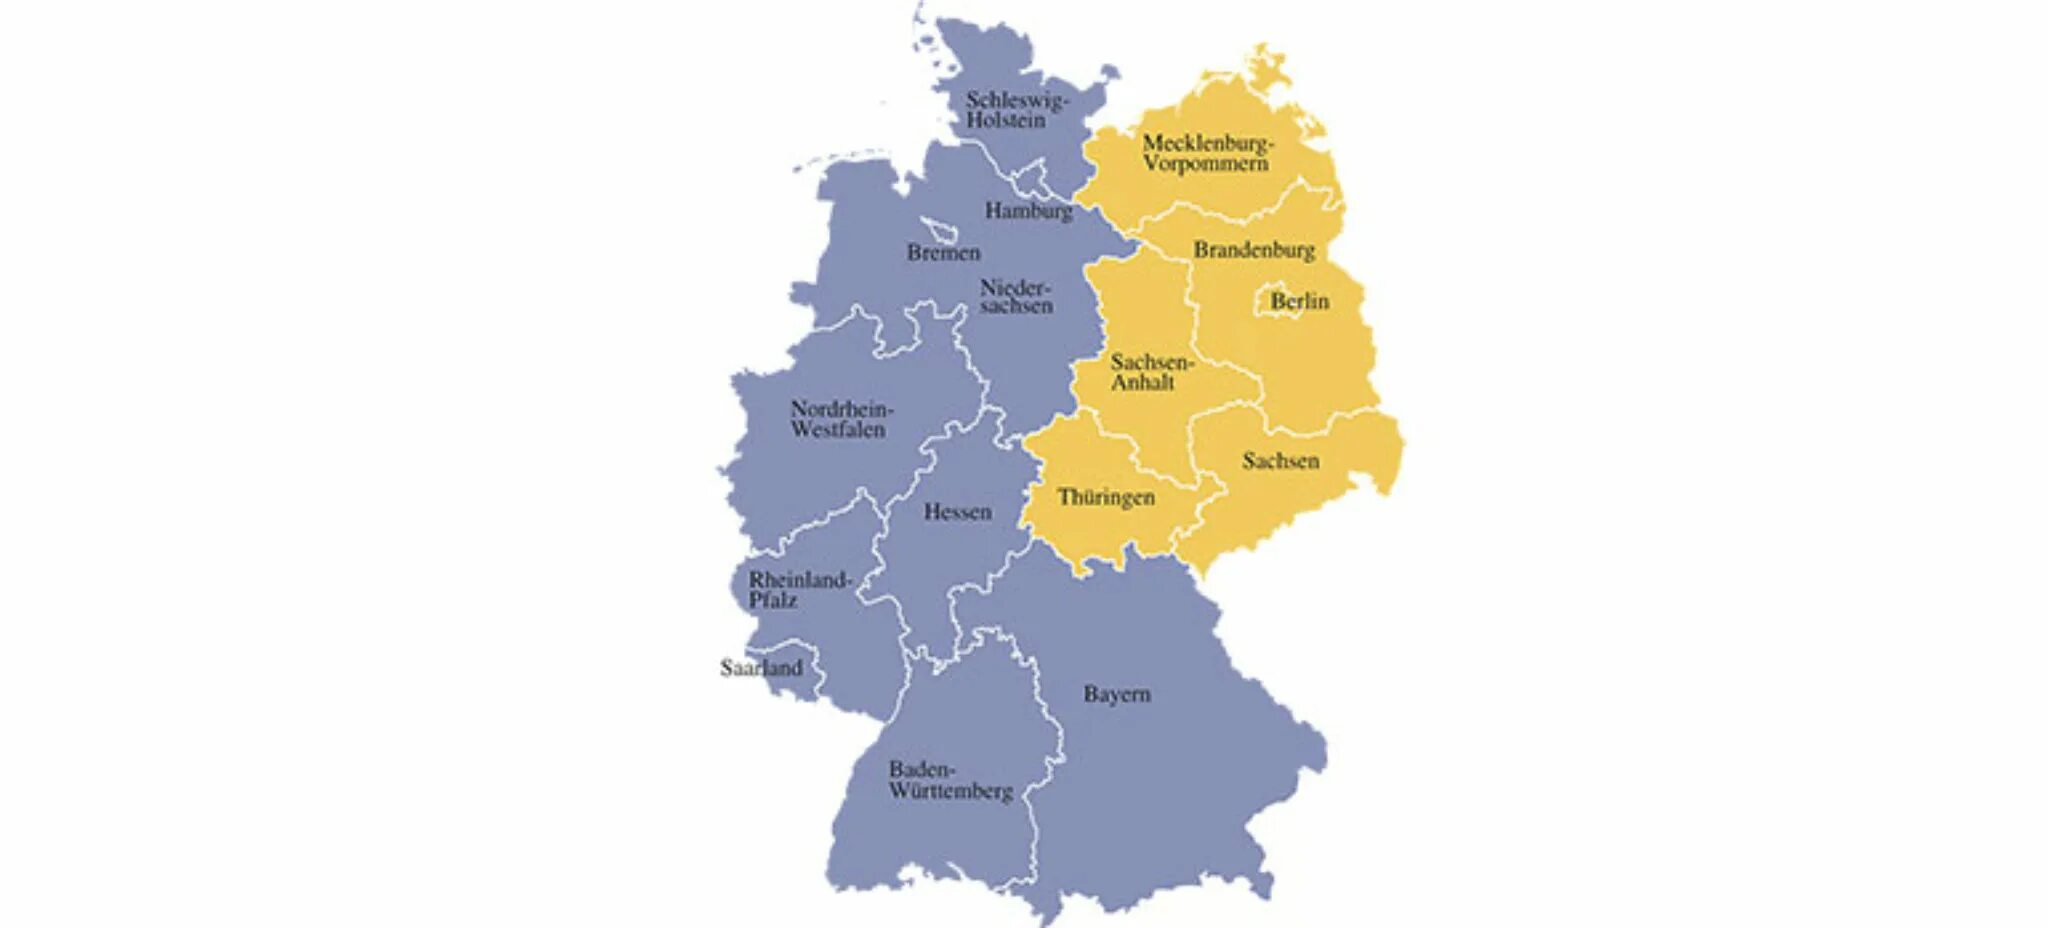 Федерация 16 земель. Карта Германии 16 земель. Карта Германии с 16 федеральными землями. 16 Федеральных земель Германии. Земли Германии на карте.